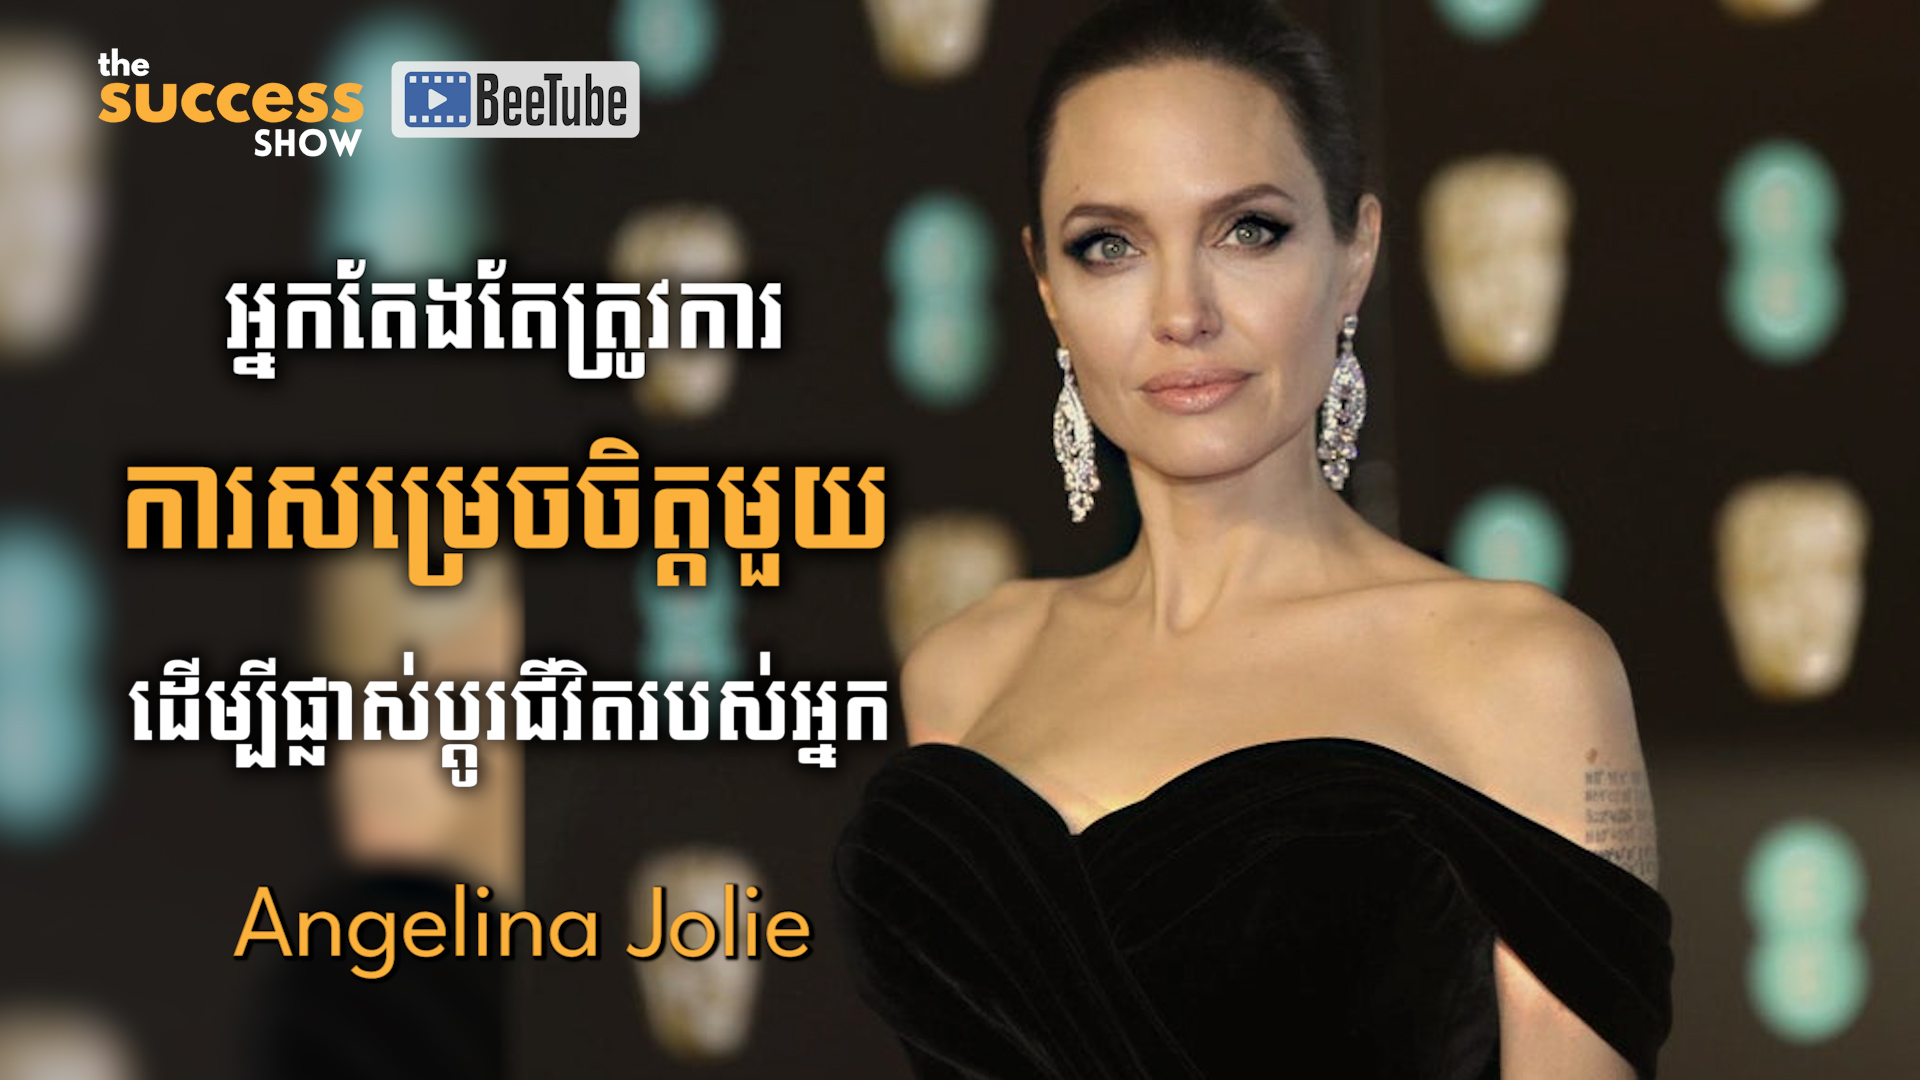 “អ្នកតែងតែត្រូវការការសម្រេចចិត្តមួយ ដើម្បីផ្លាស់ប្តូរជីវិតរបស់អ្នក” Angelina Jolie